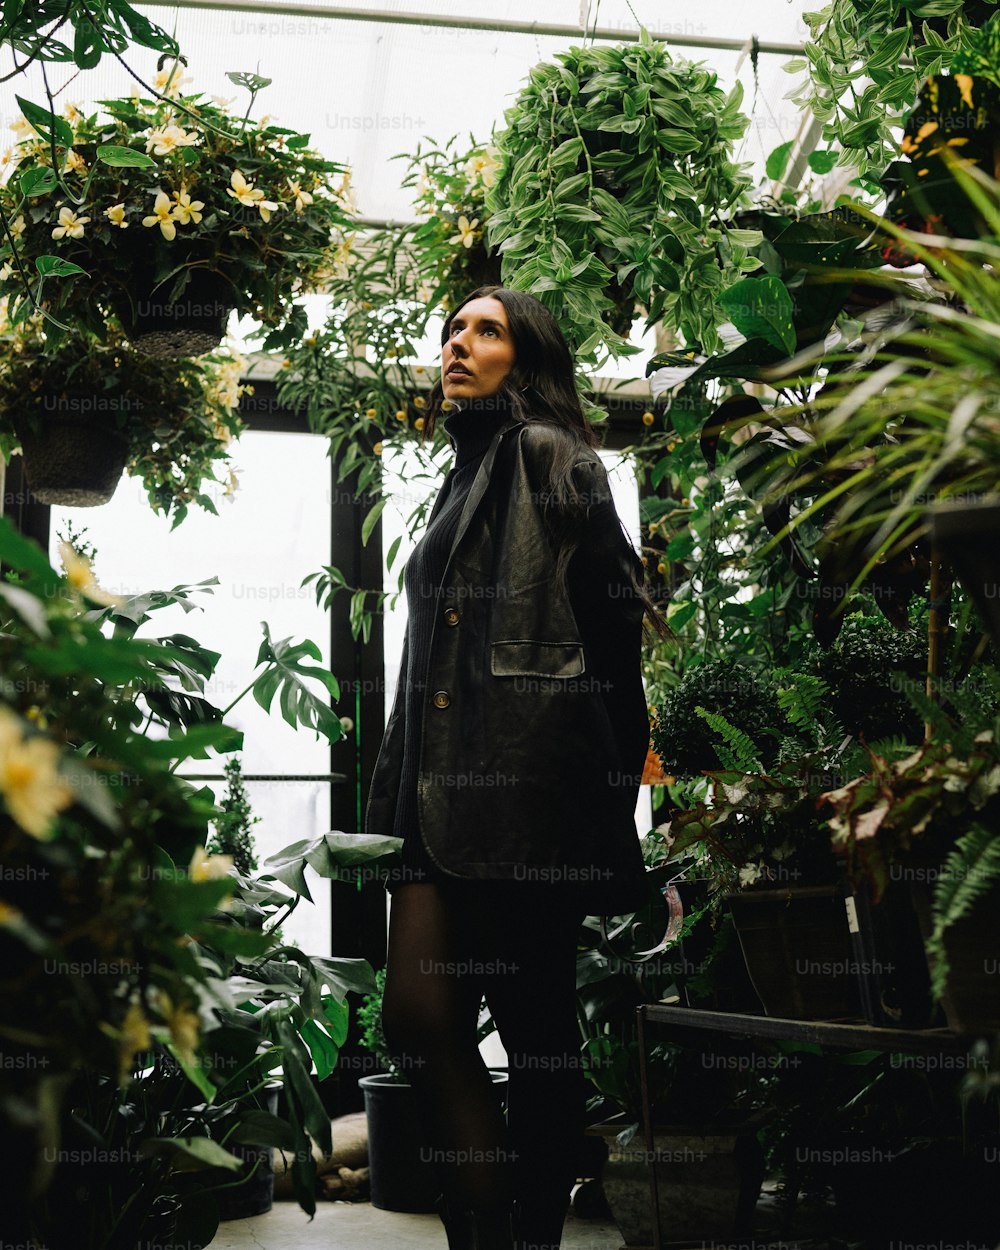 Una mujer parada en un invernadero rodeada de plantas